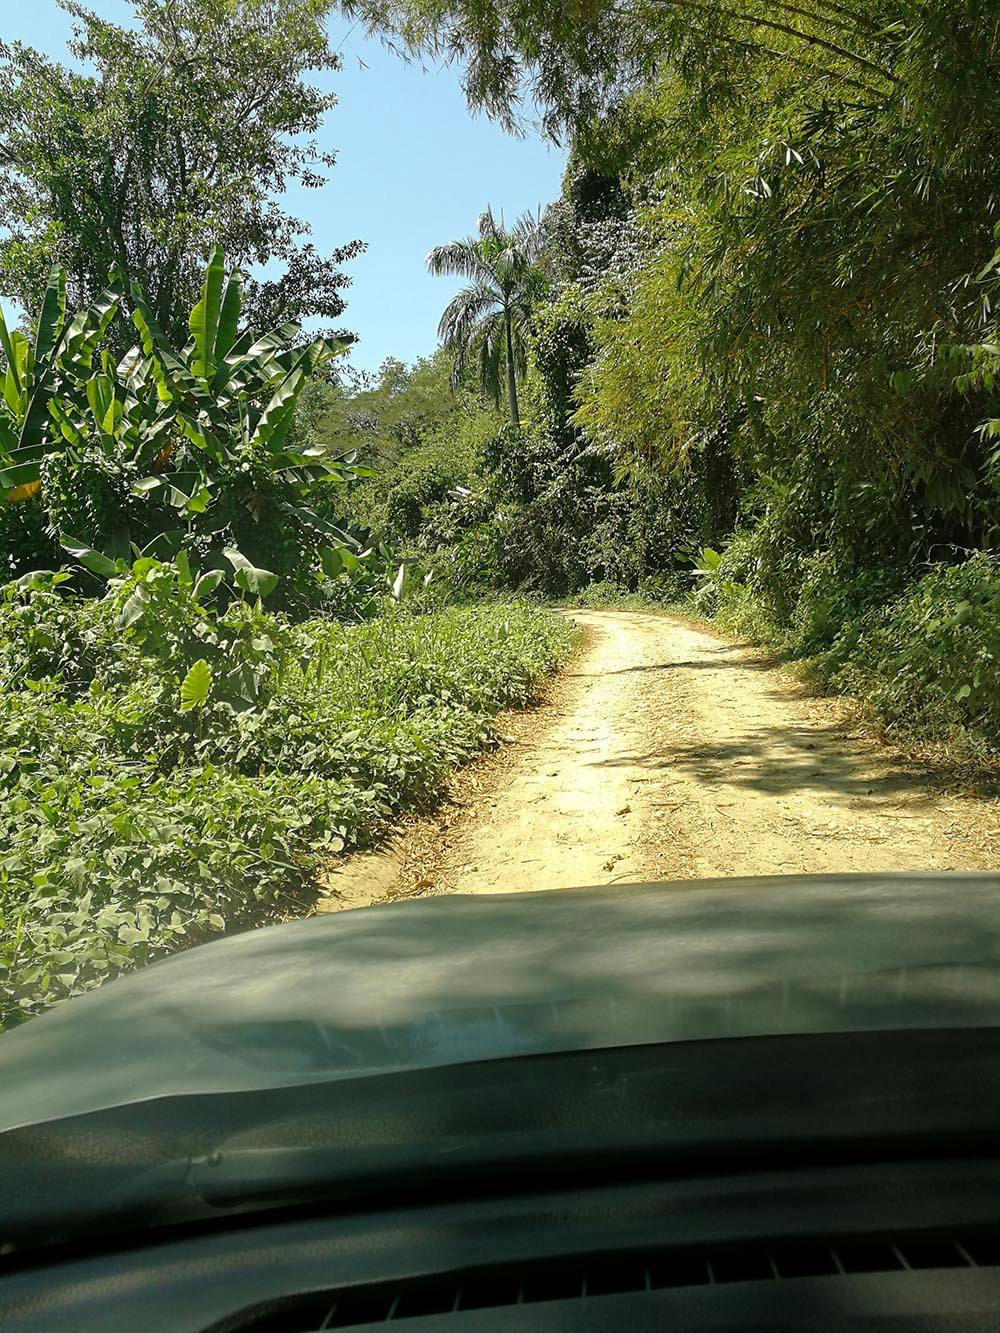 Met een gehuurde 4wd offroad in de jungle van Costa Rica.